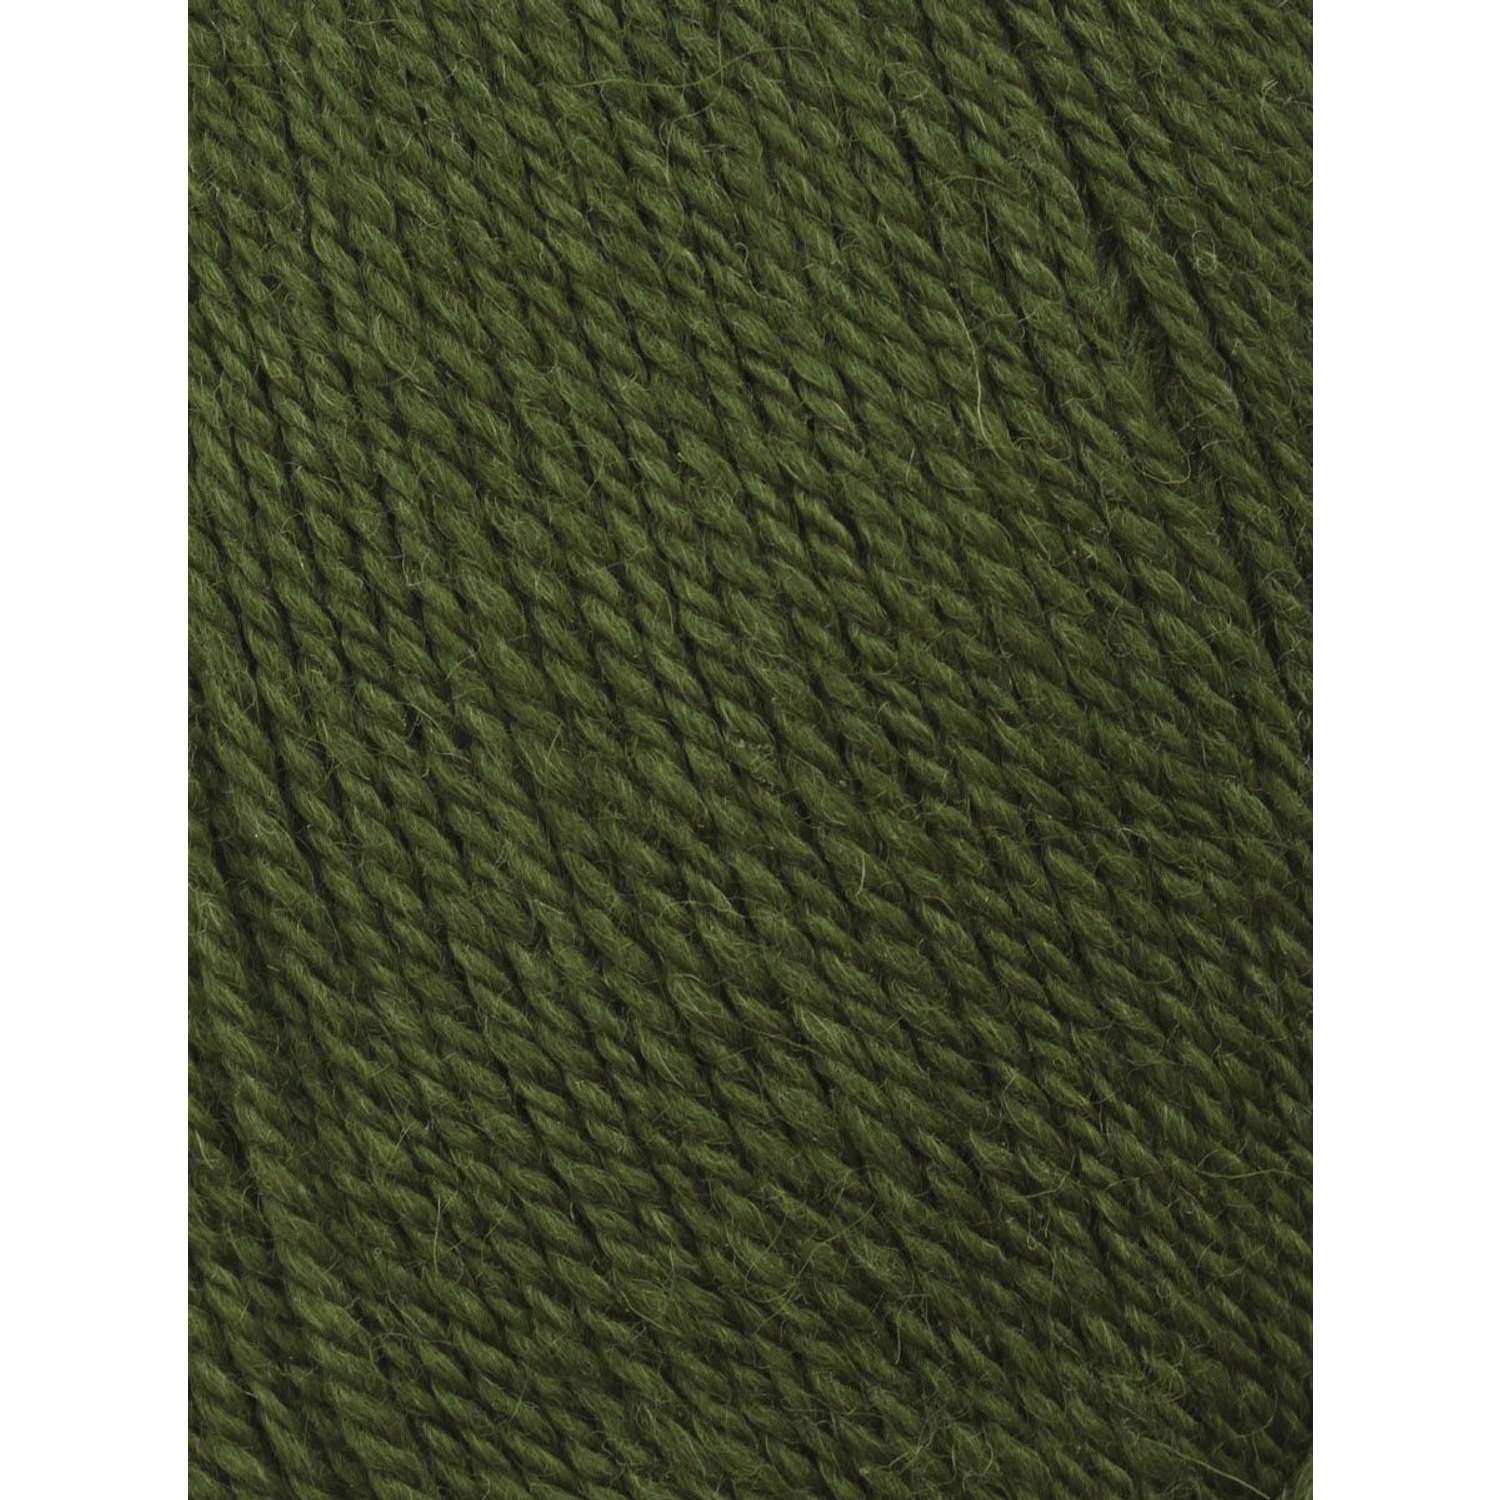 Пряжа Astra Premium Эвридика шерстяная 100 г 200 м 15 темно-зеленый 3 мотка - фото 3